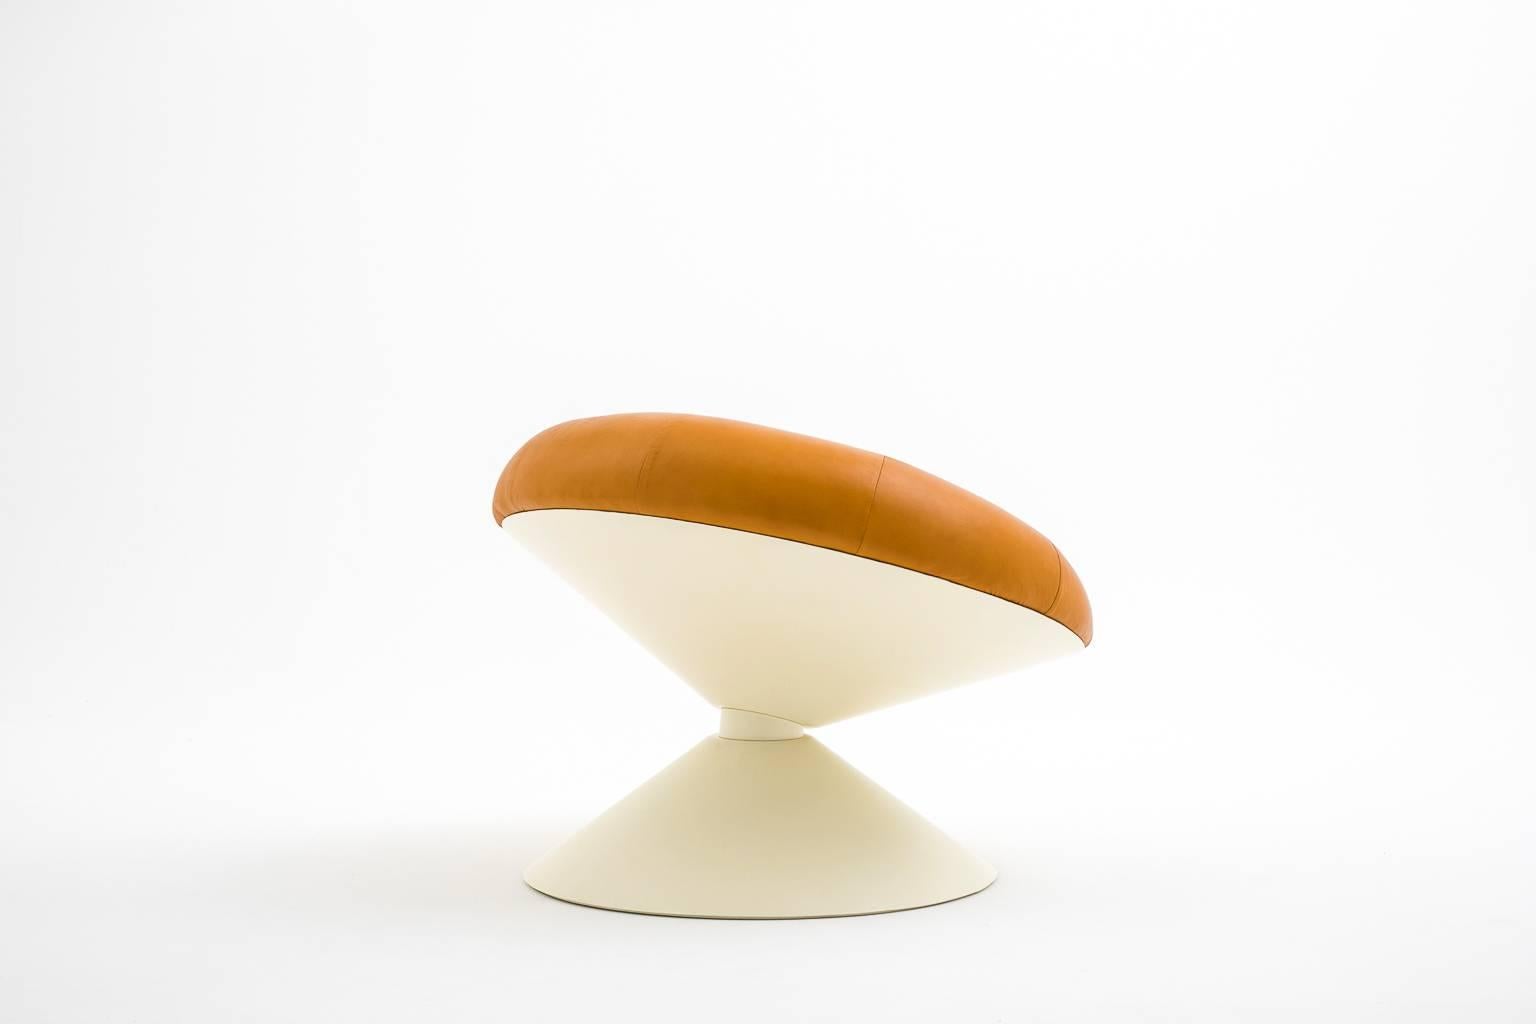 Diabolo-Stuhl aus Glasfaser und Leder von Ben Swildens, 1960er Jahre (Moderne der Mitte des Jahrhunderts)